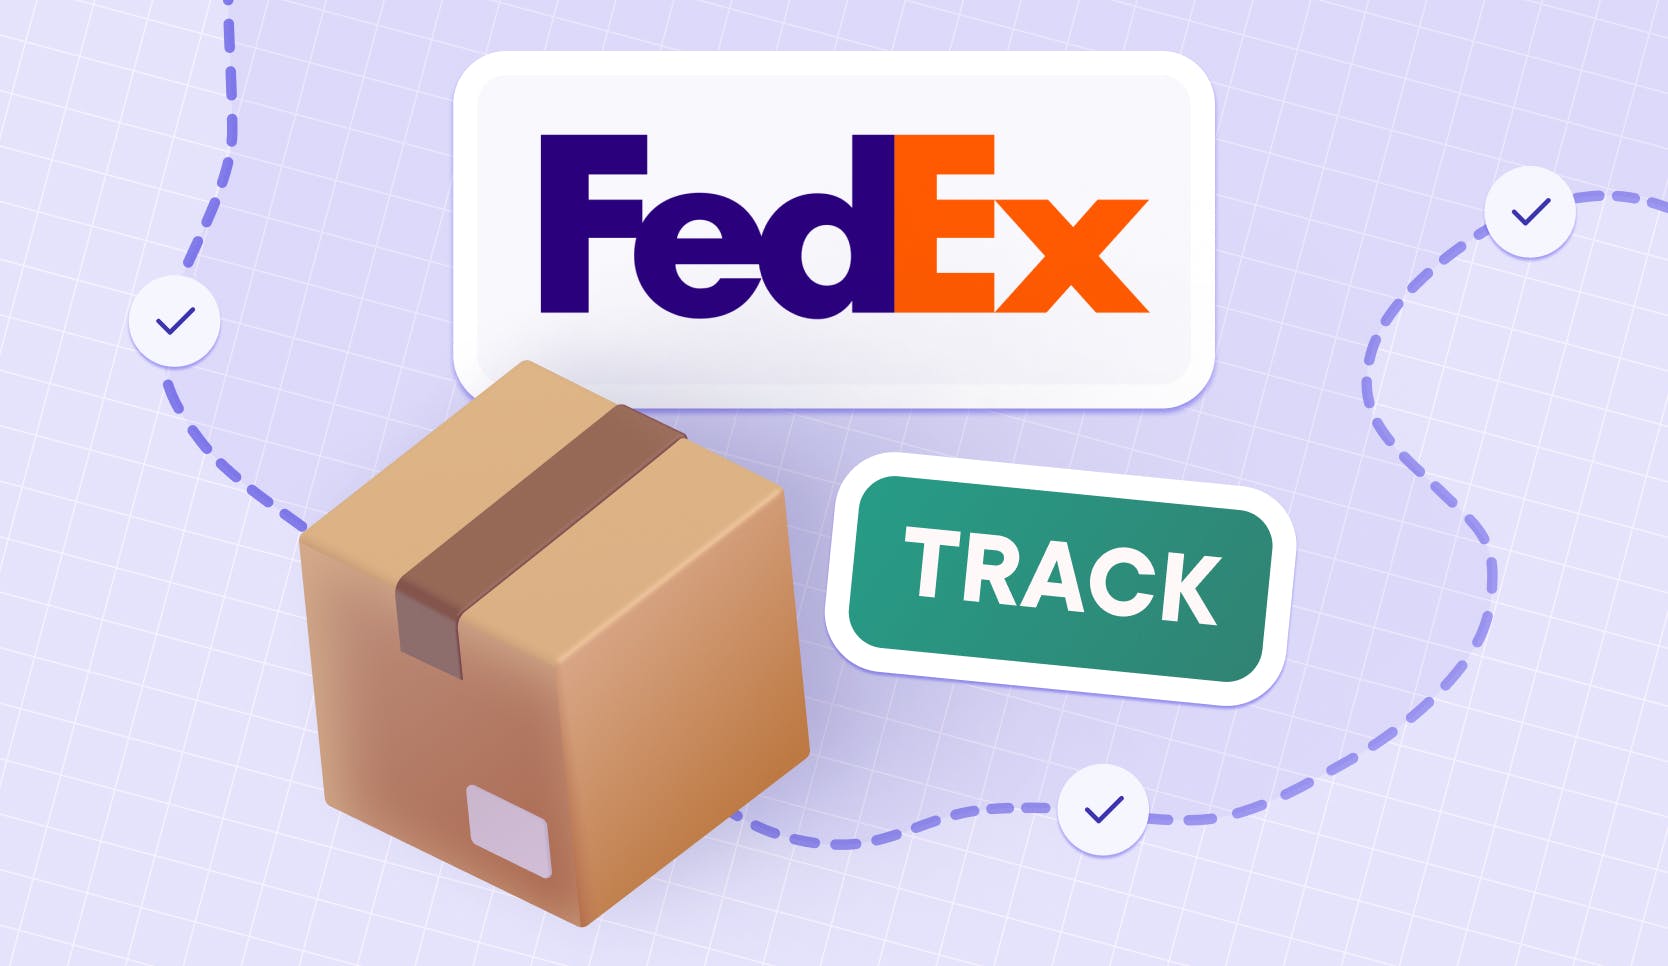 Fedex track tracking